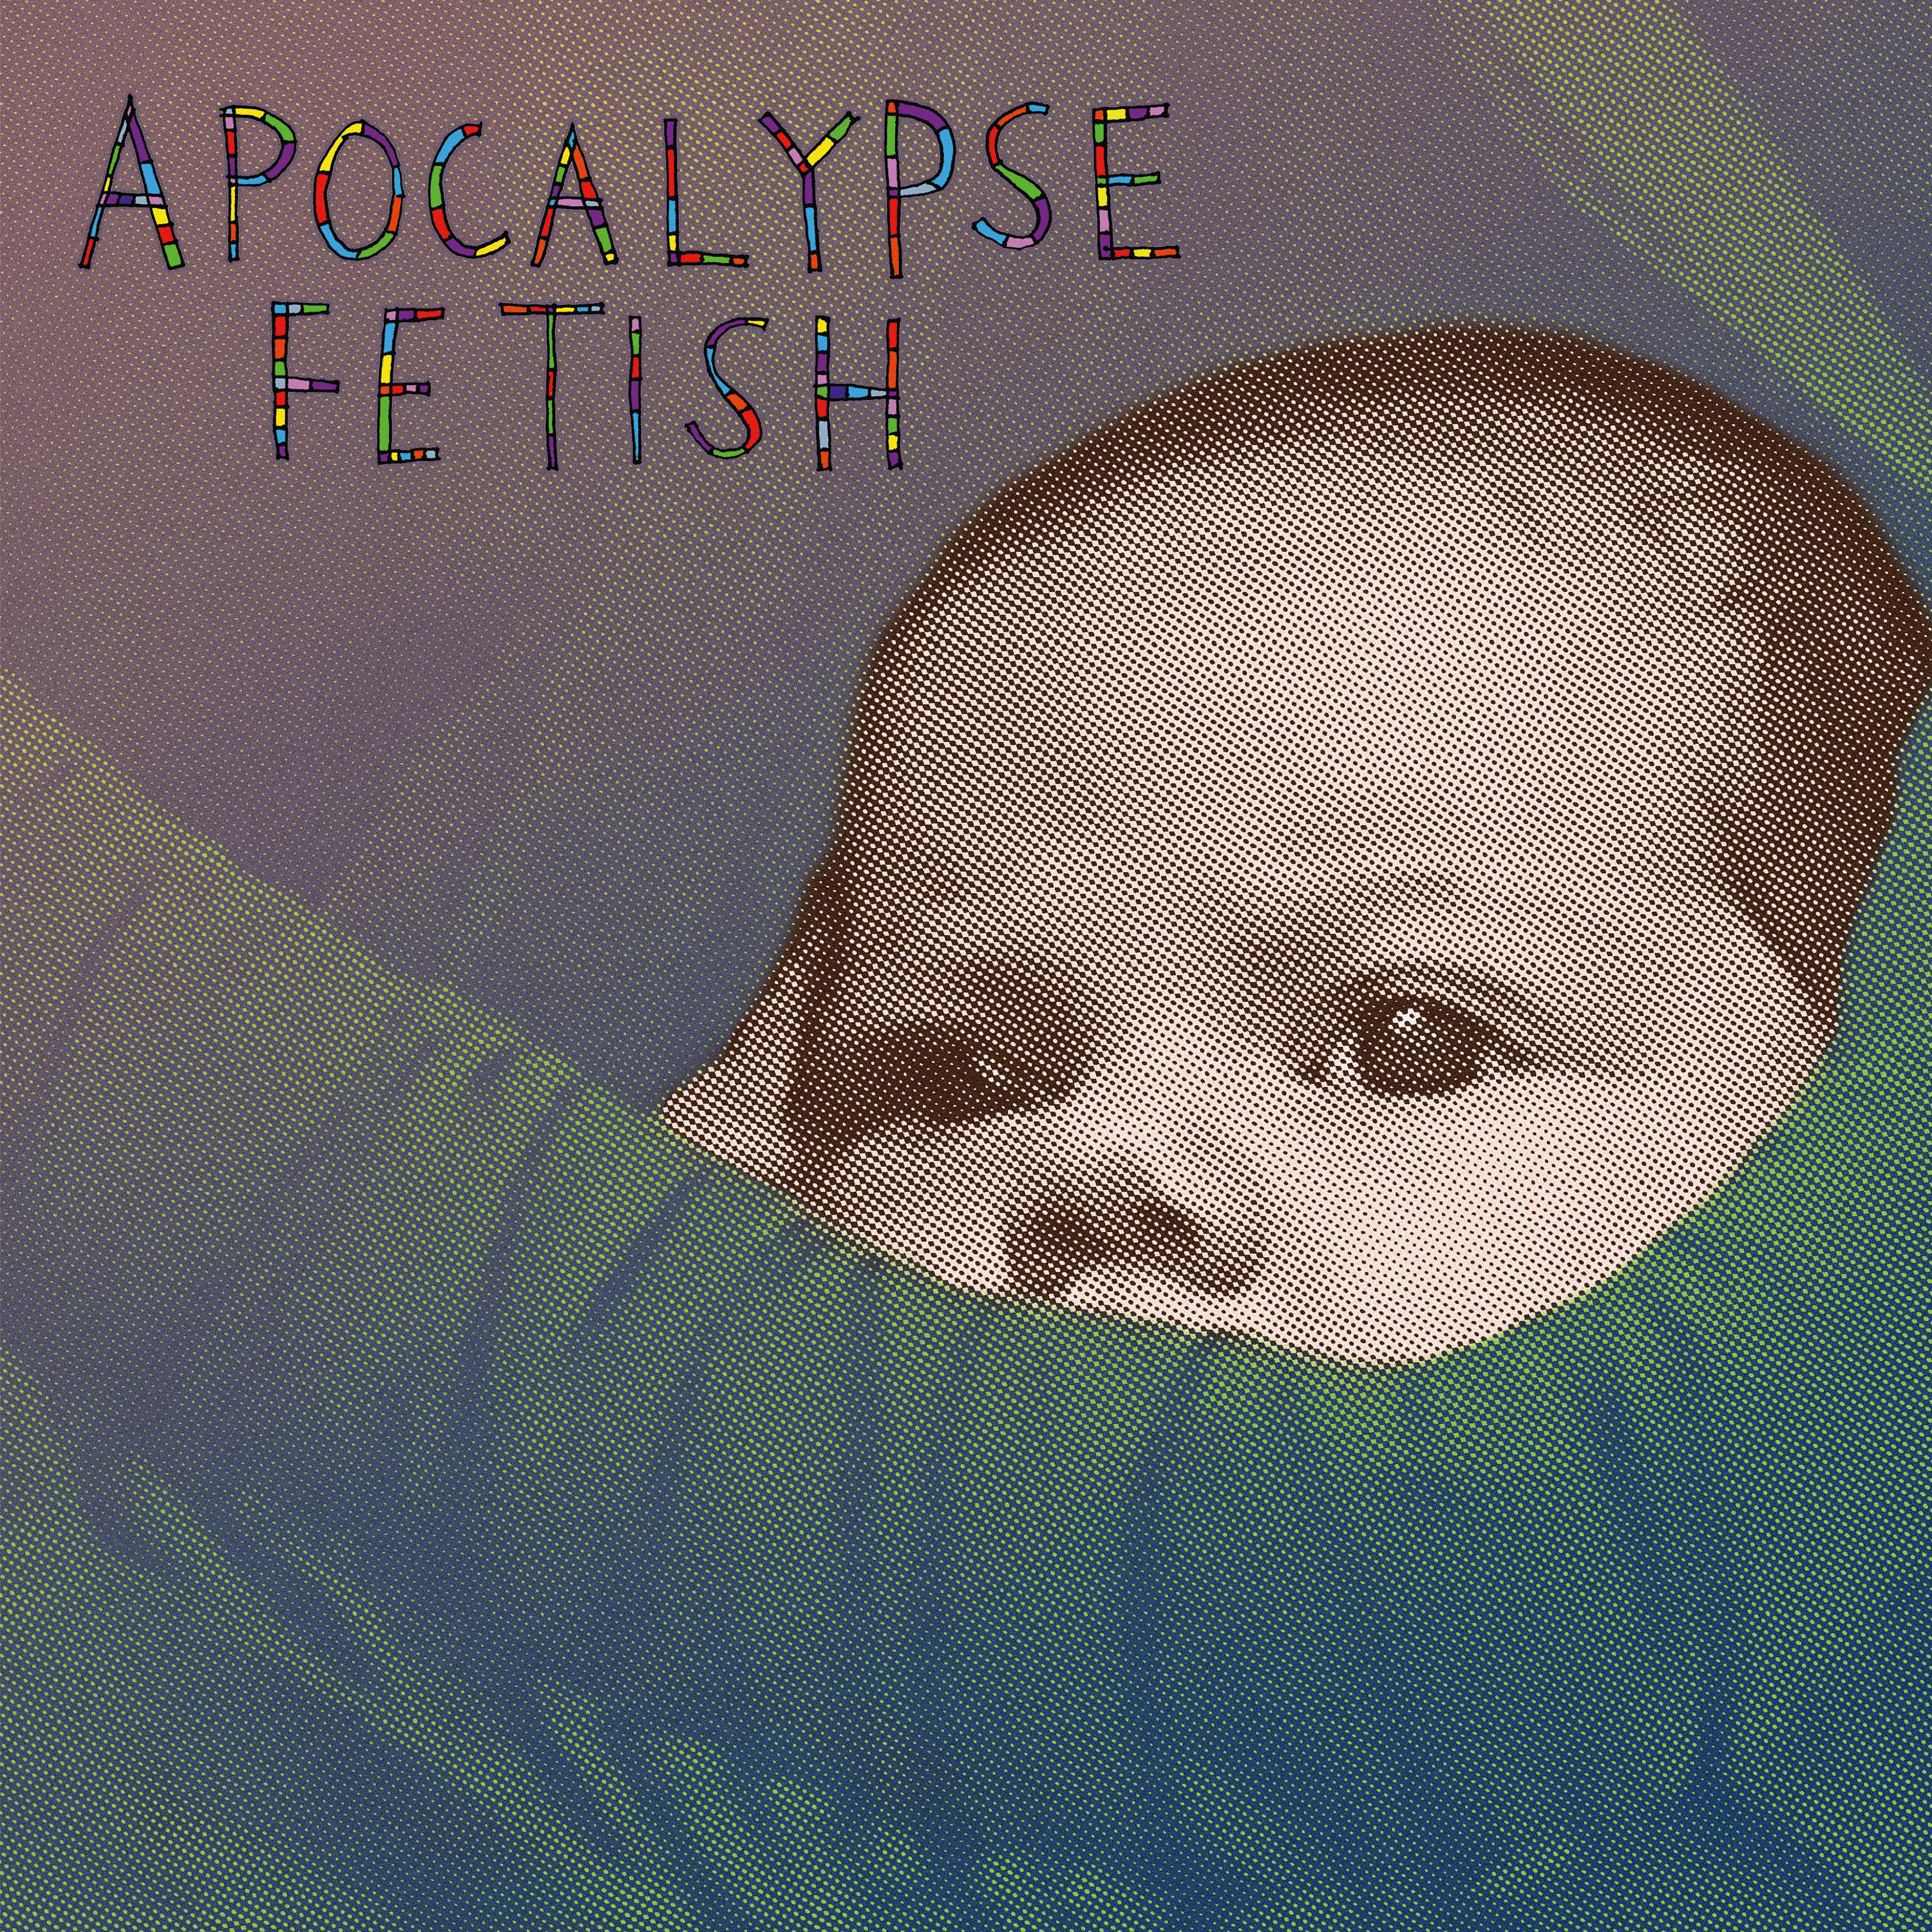 Lou Barlow - Apocalypse Fetish (EP) - CD